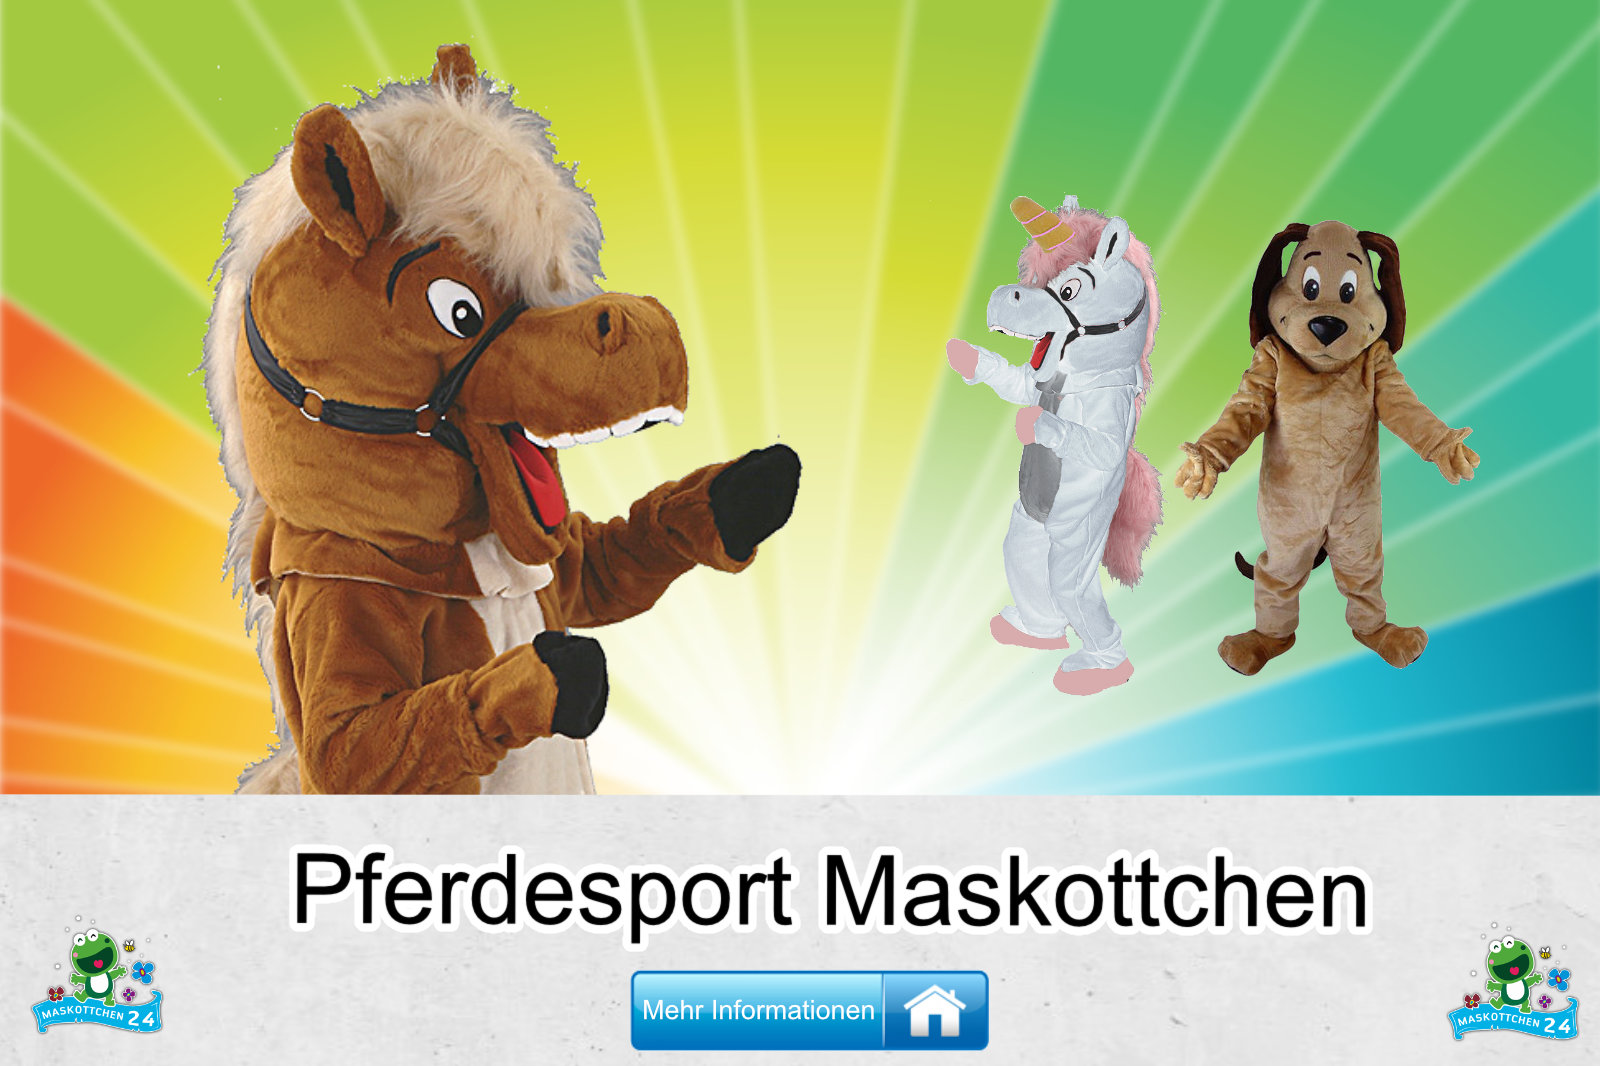 Pferdesport-Kostueme-Maskottchen-Karneval-Produktion-Lauffiguren